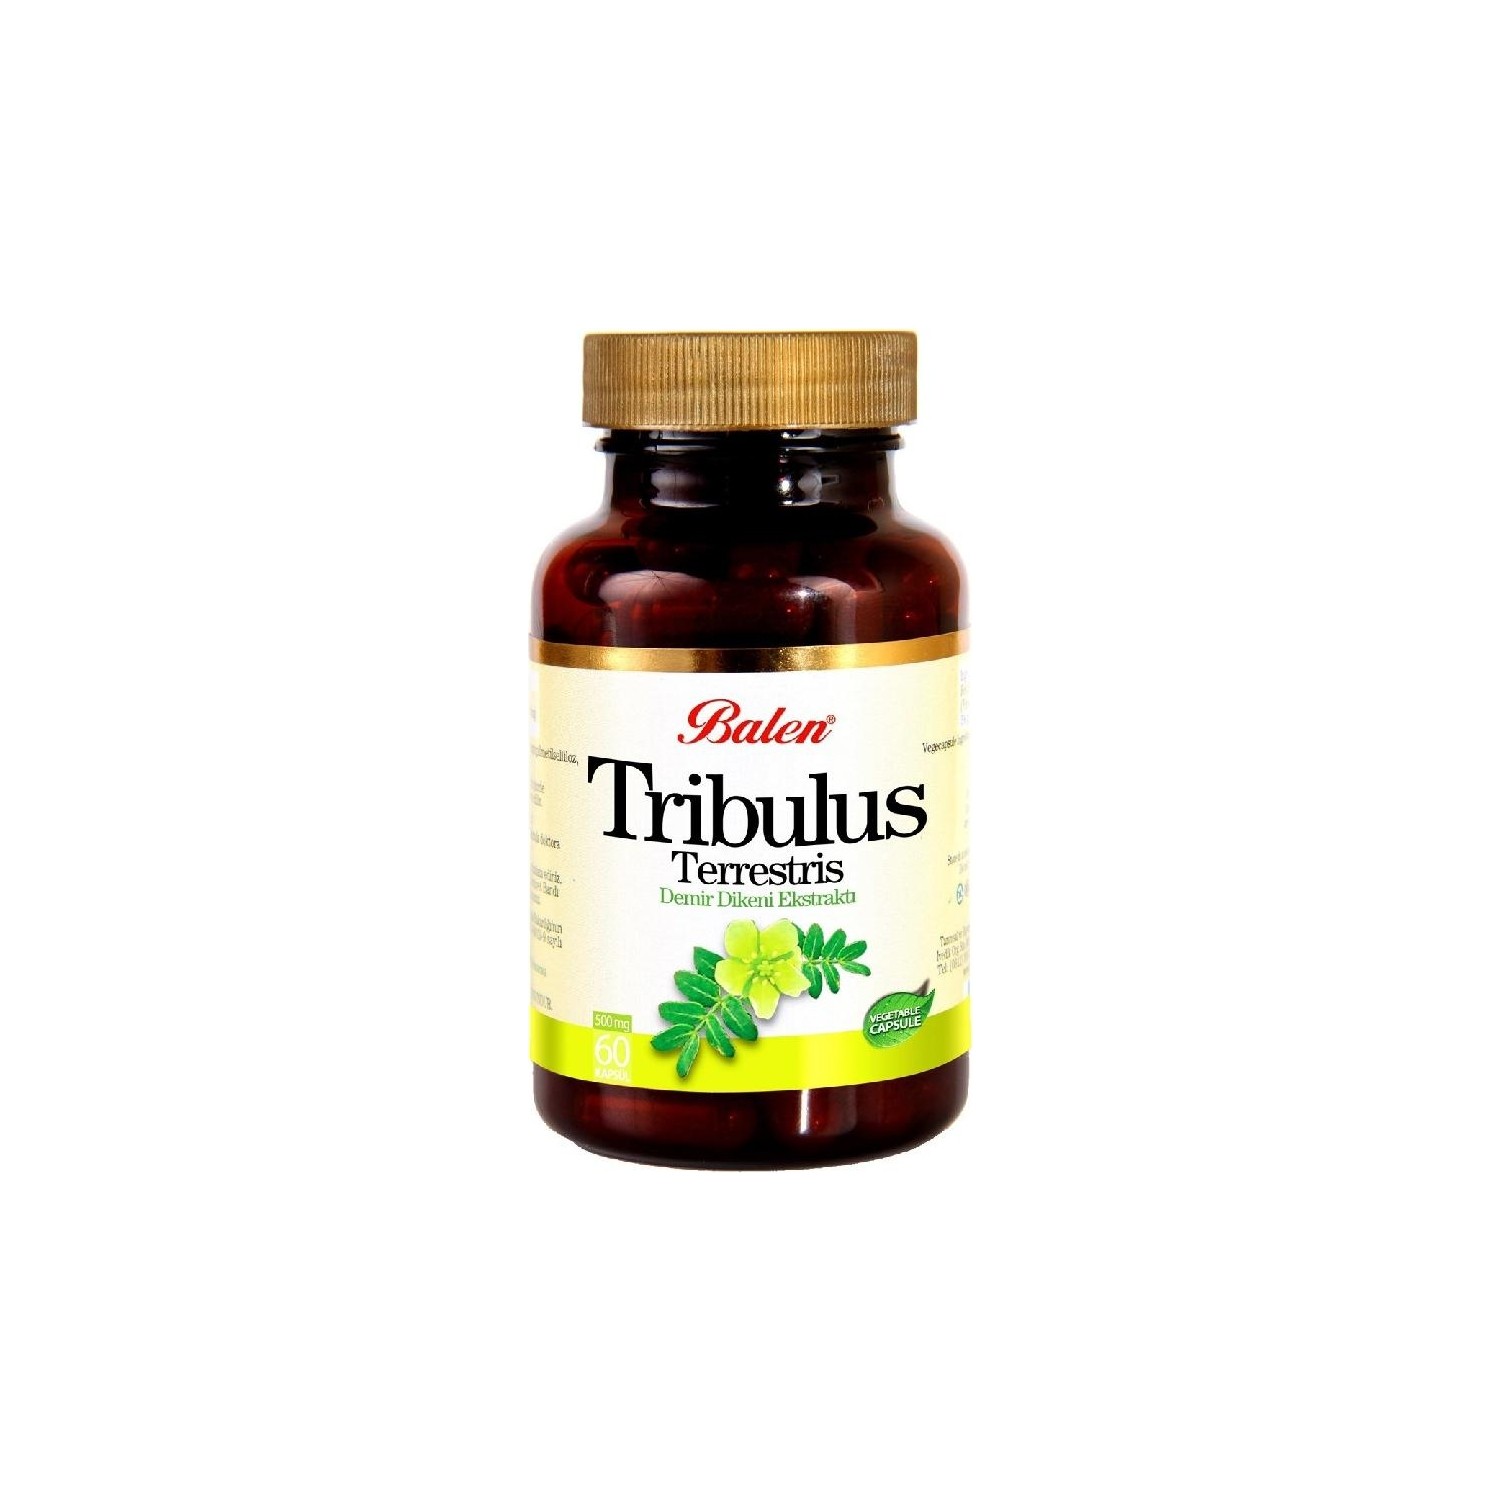 Пищевая добавка Balen Tribulus Terrestris 500 мг, 60 капсул пищевая добавка balen tribulus terrestris 500 мг 2 упаковки по 60 капсул